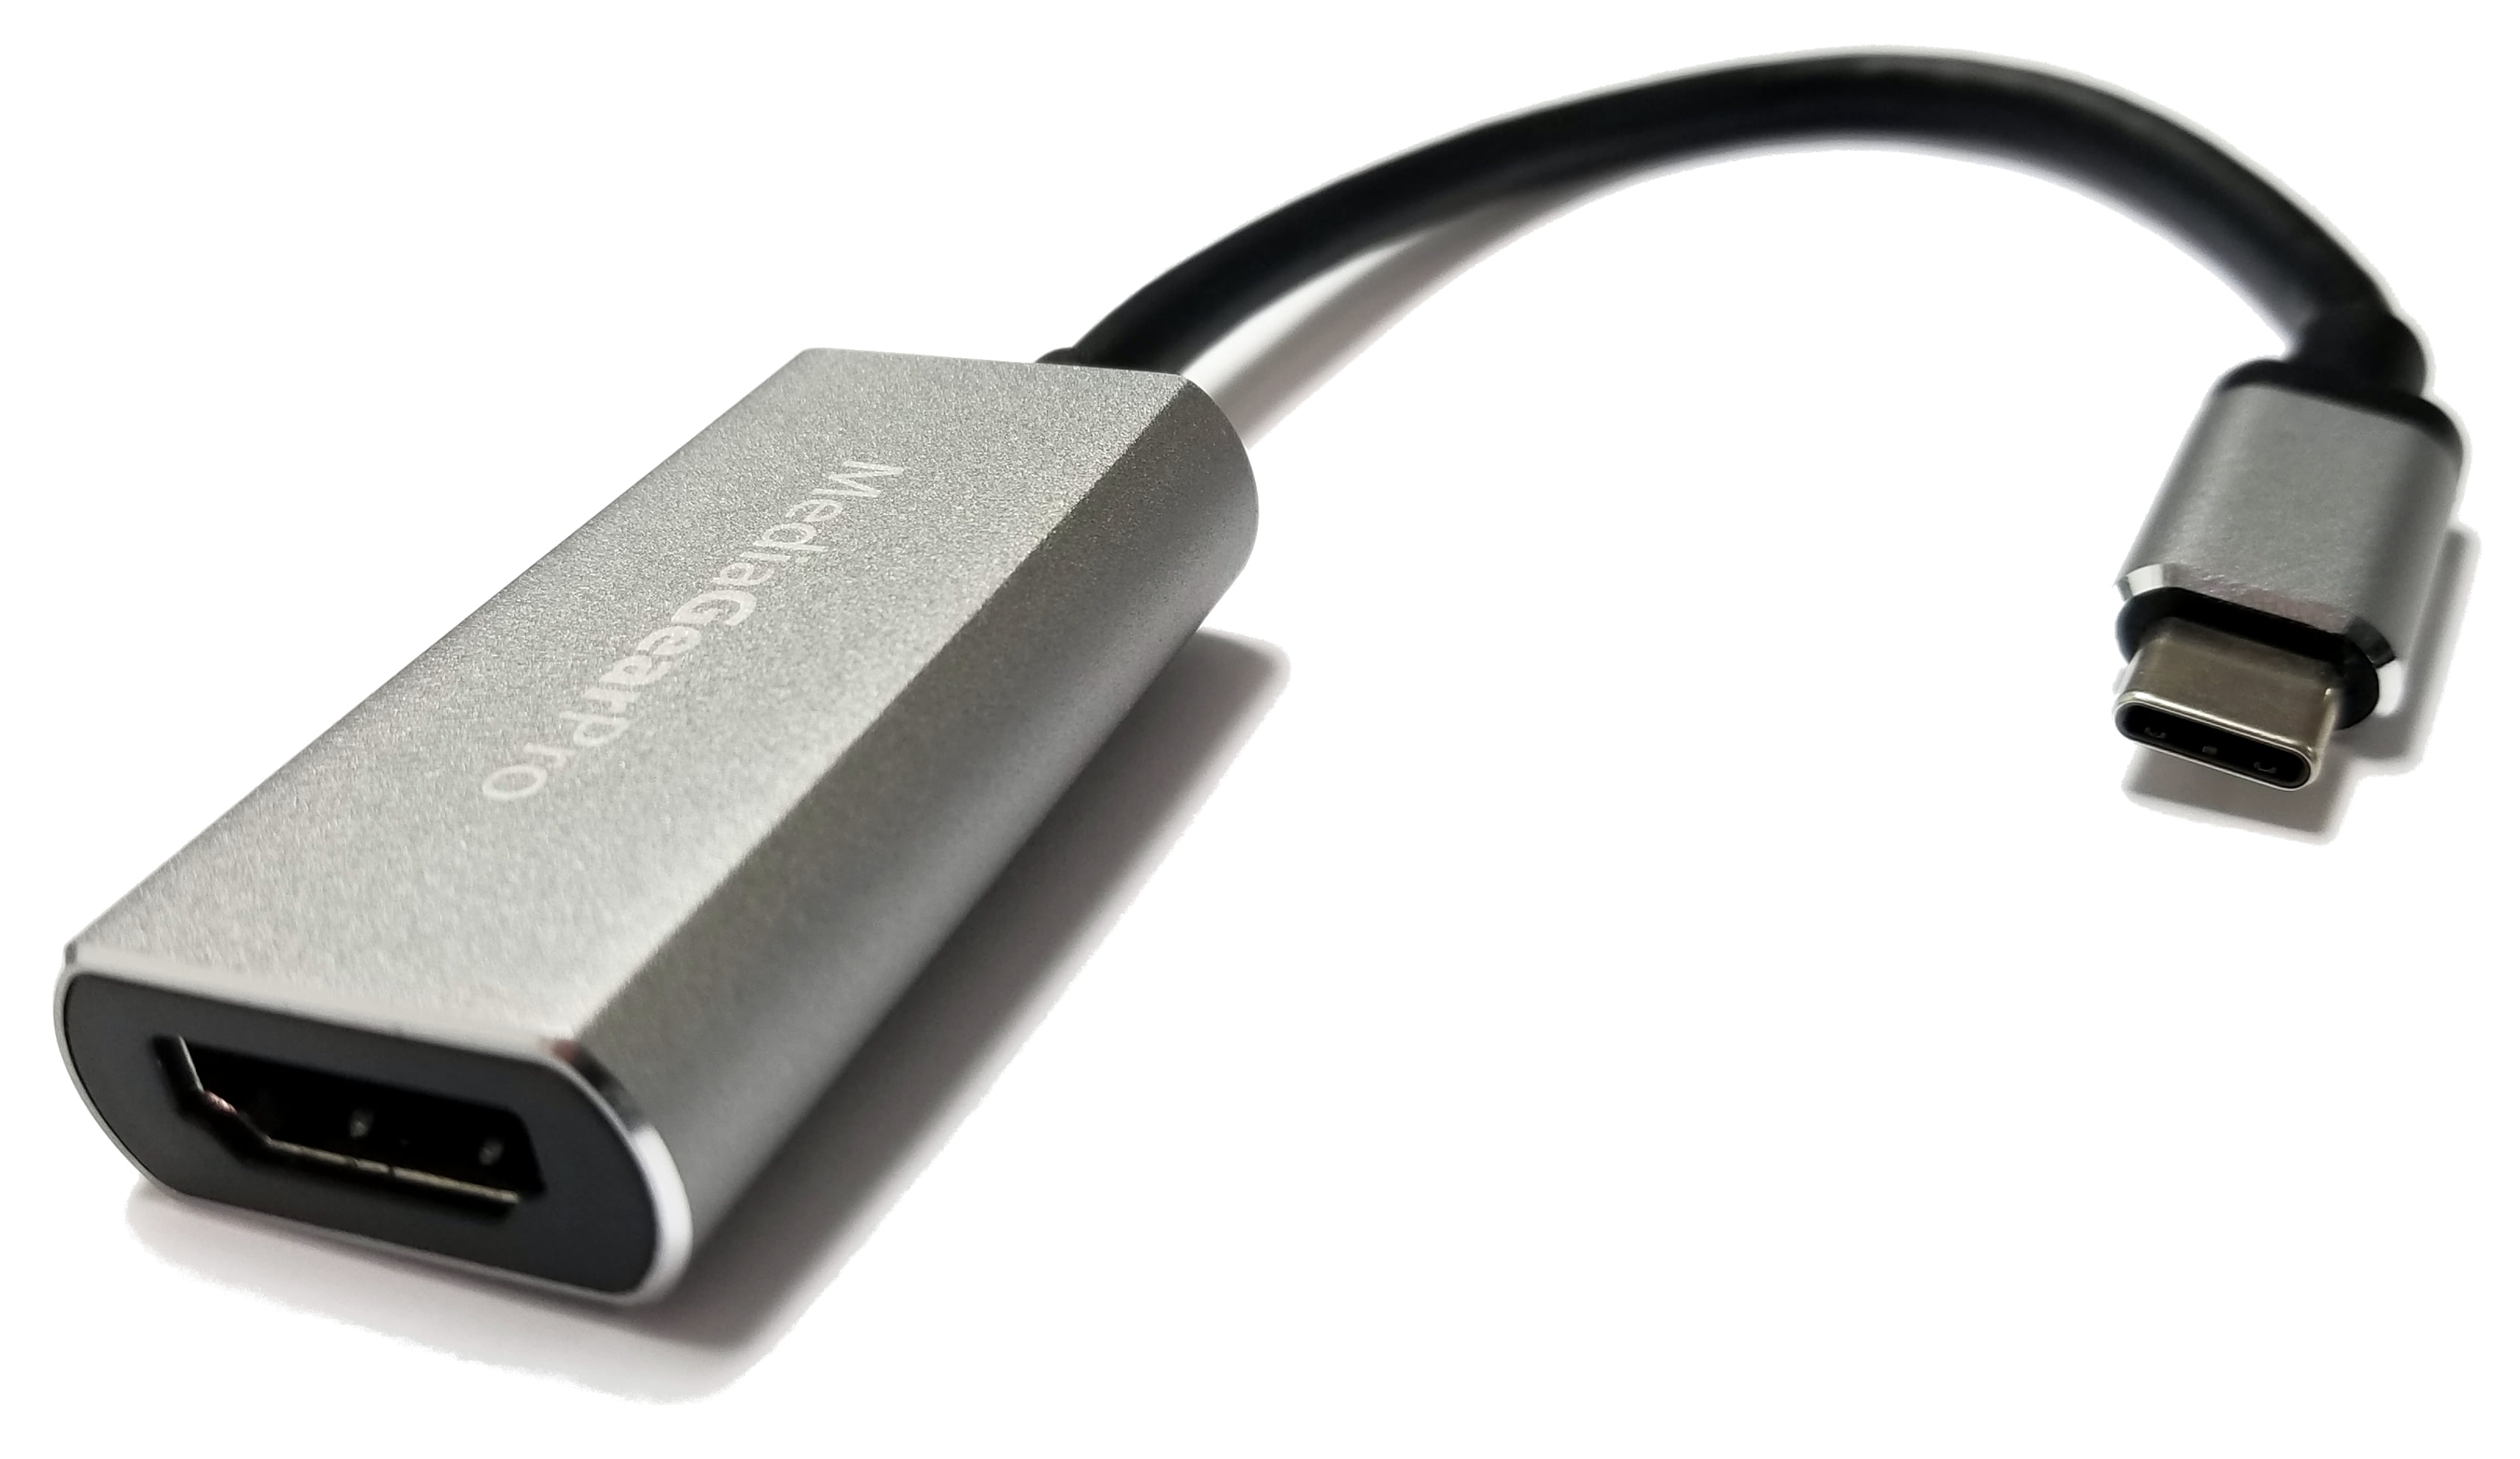 USB C to 4K HDMI - USB Type C 3.1 OTG to 4K @30HZ UHD HDMI Adapter .